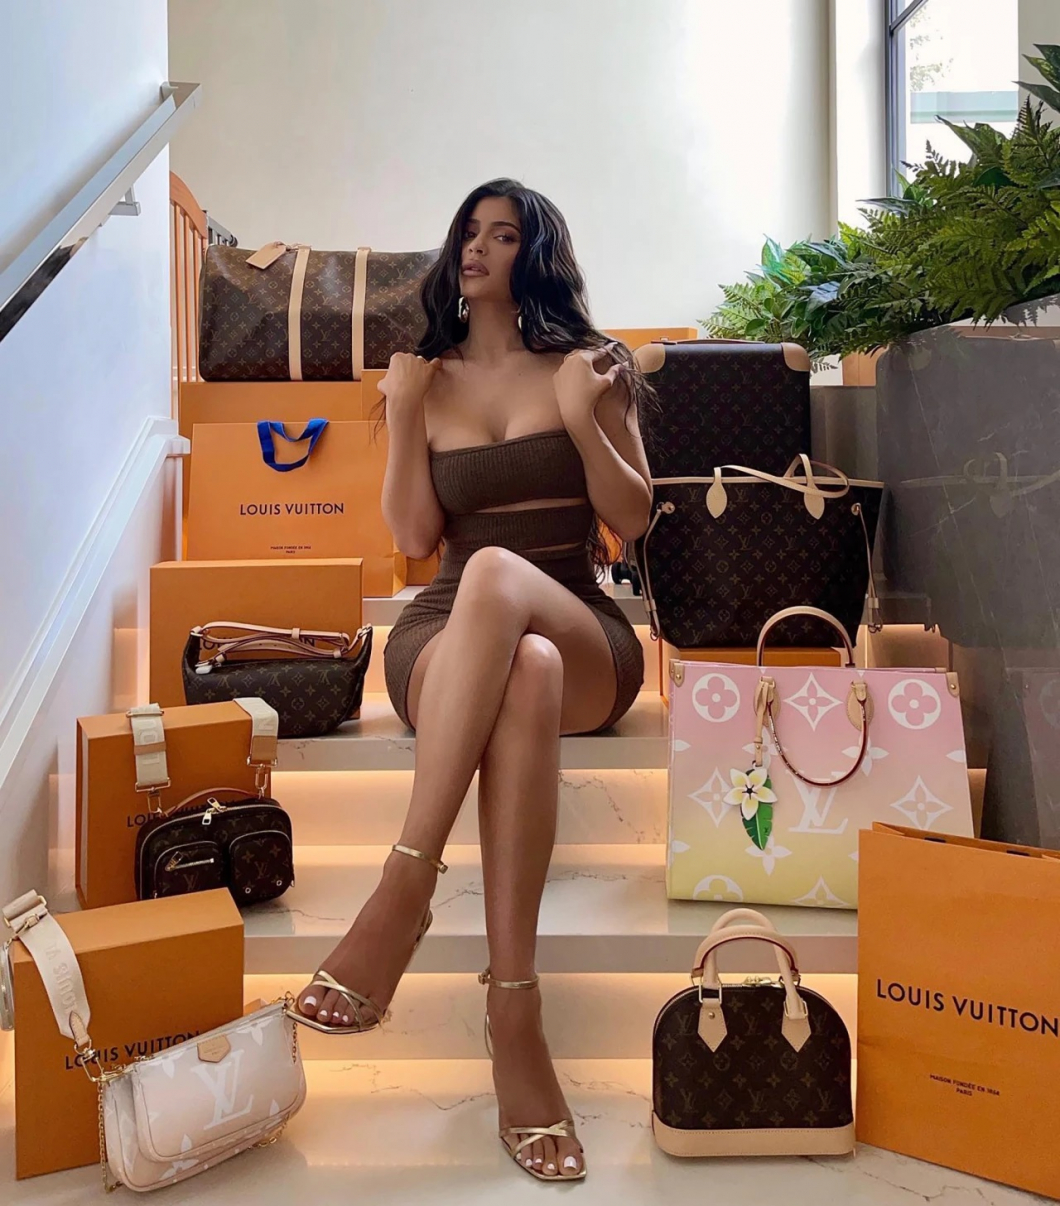 Kylie Jenner sokkolta rajongóit: egy lakás árát éri cipőgyűjteménye